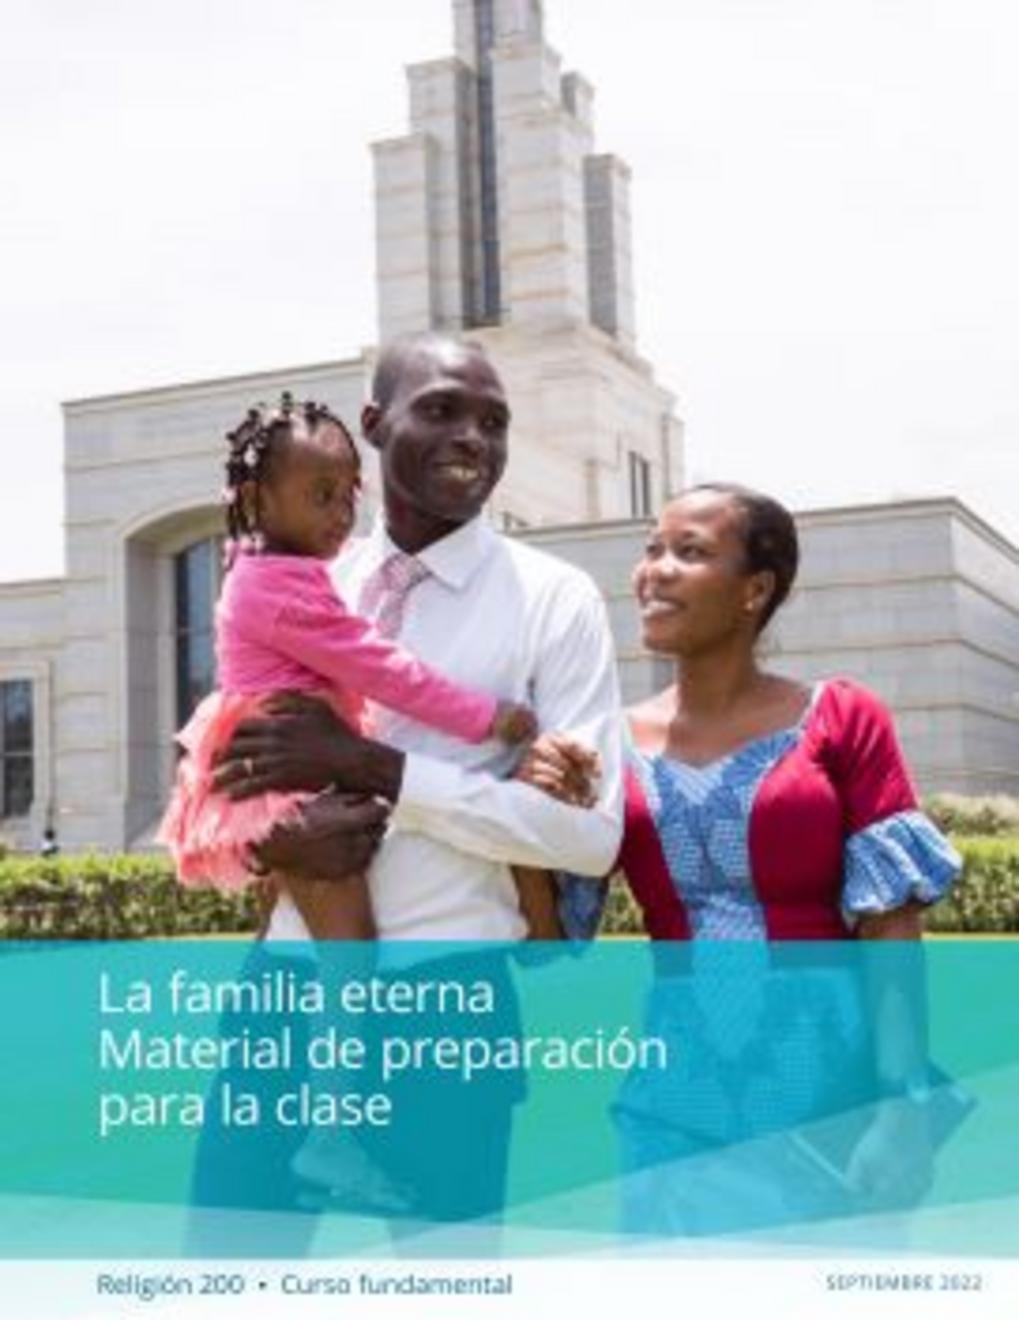 La familia eterna: Material de preparación para la clase (Religión 200)